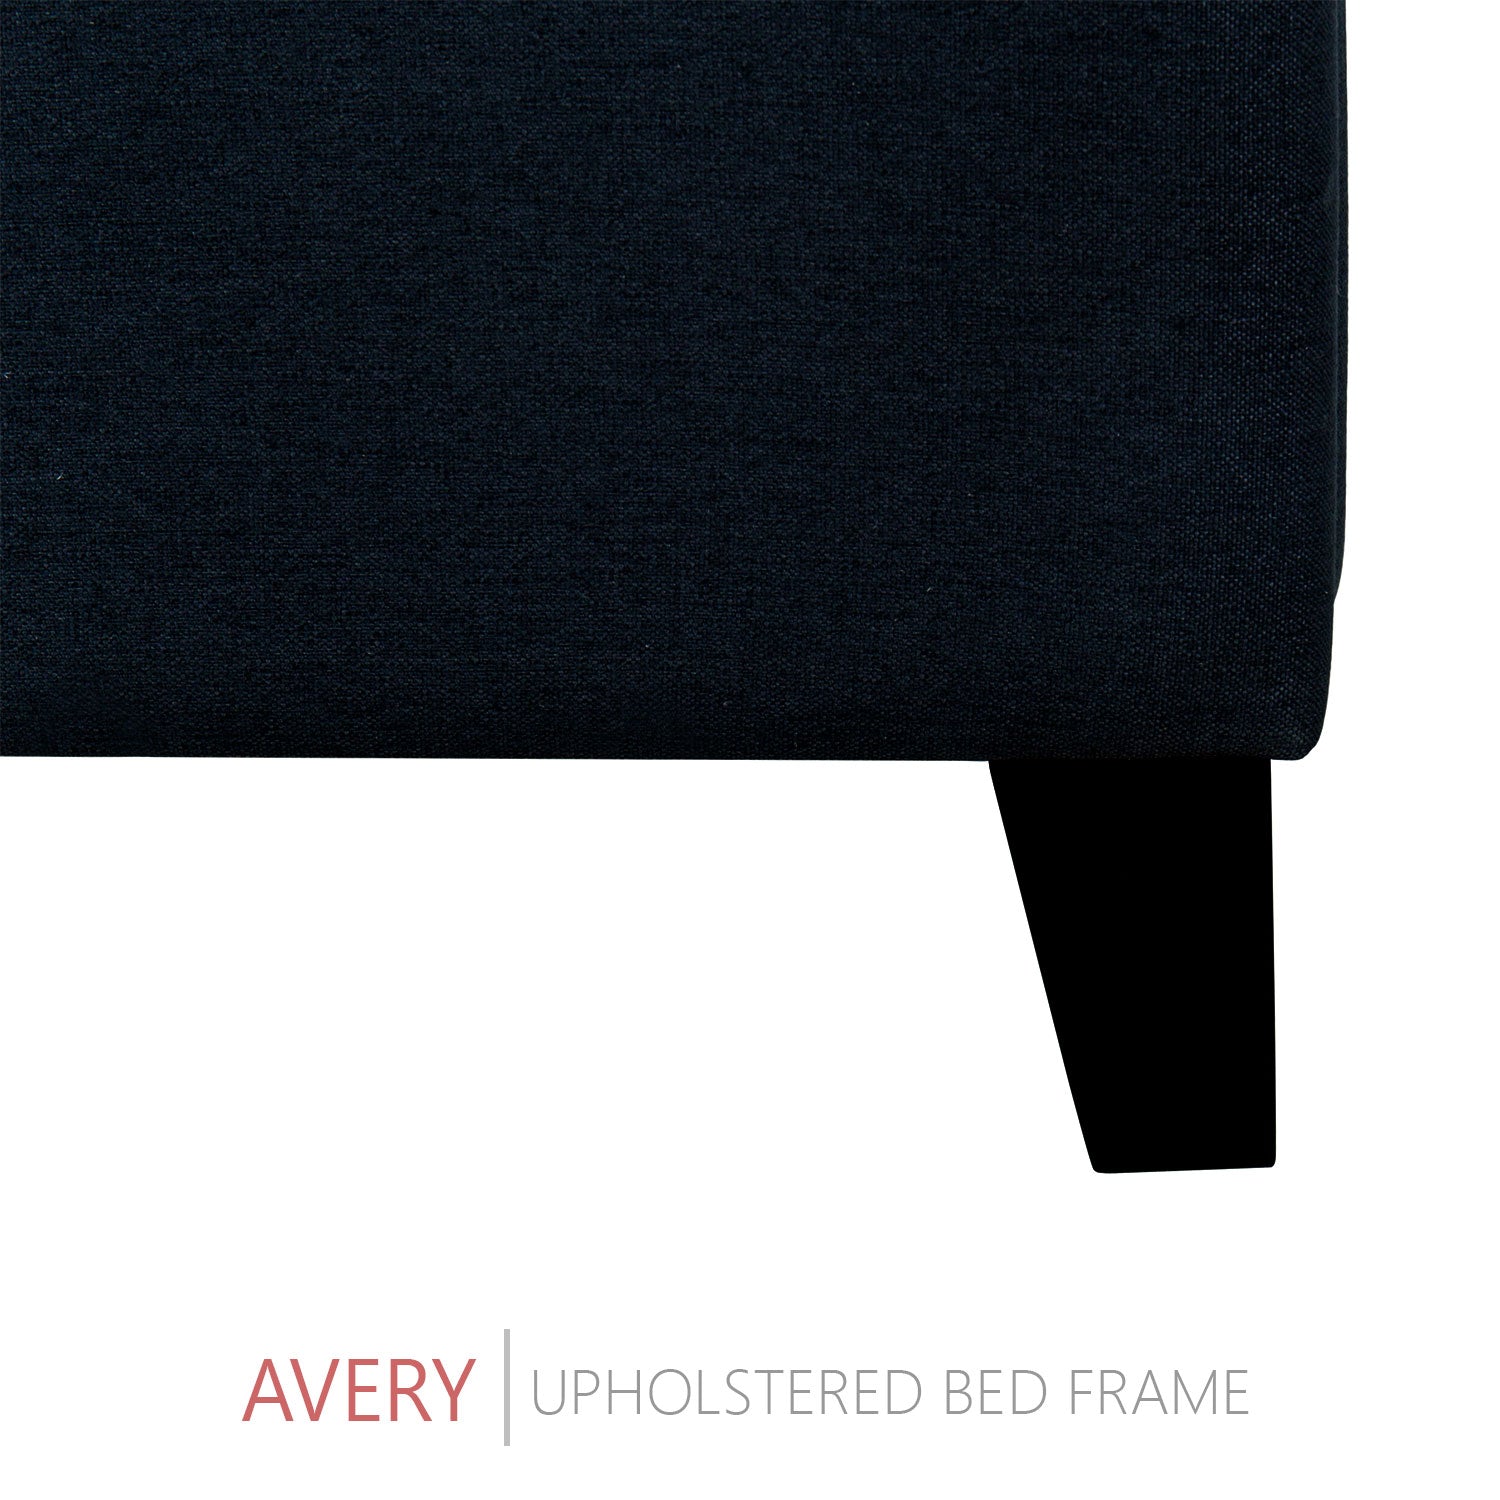 Avery Upholstered Platform Bed, 50" Tall Headboard - Midnight Blue Denim - BlissfulNights.com